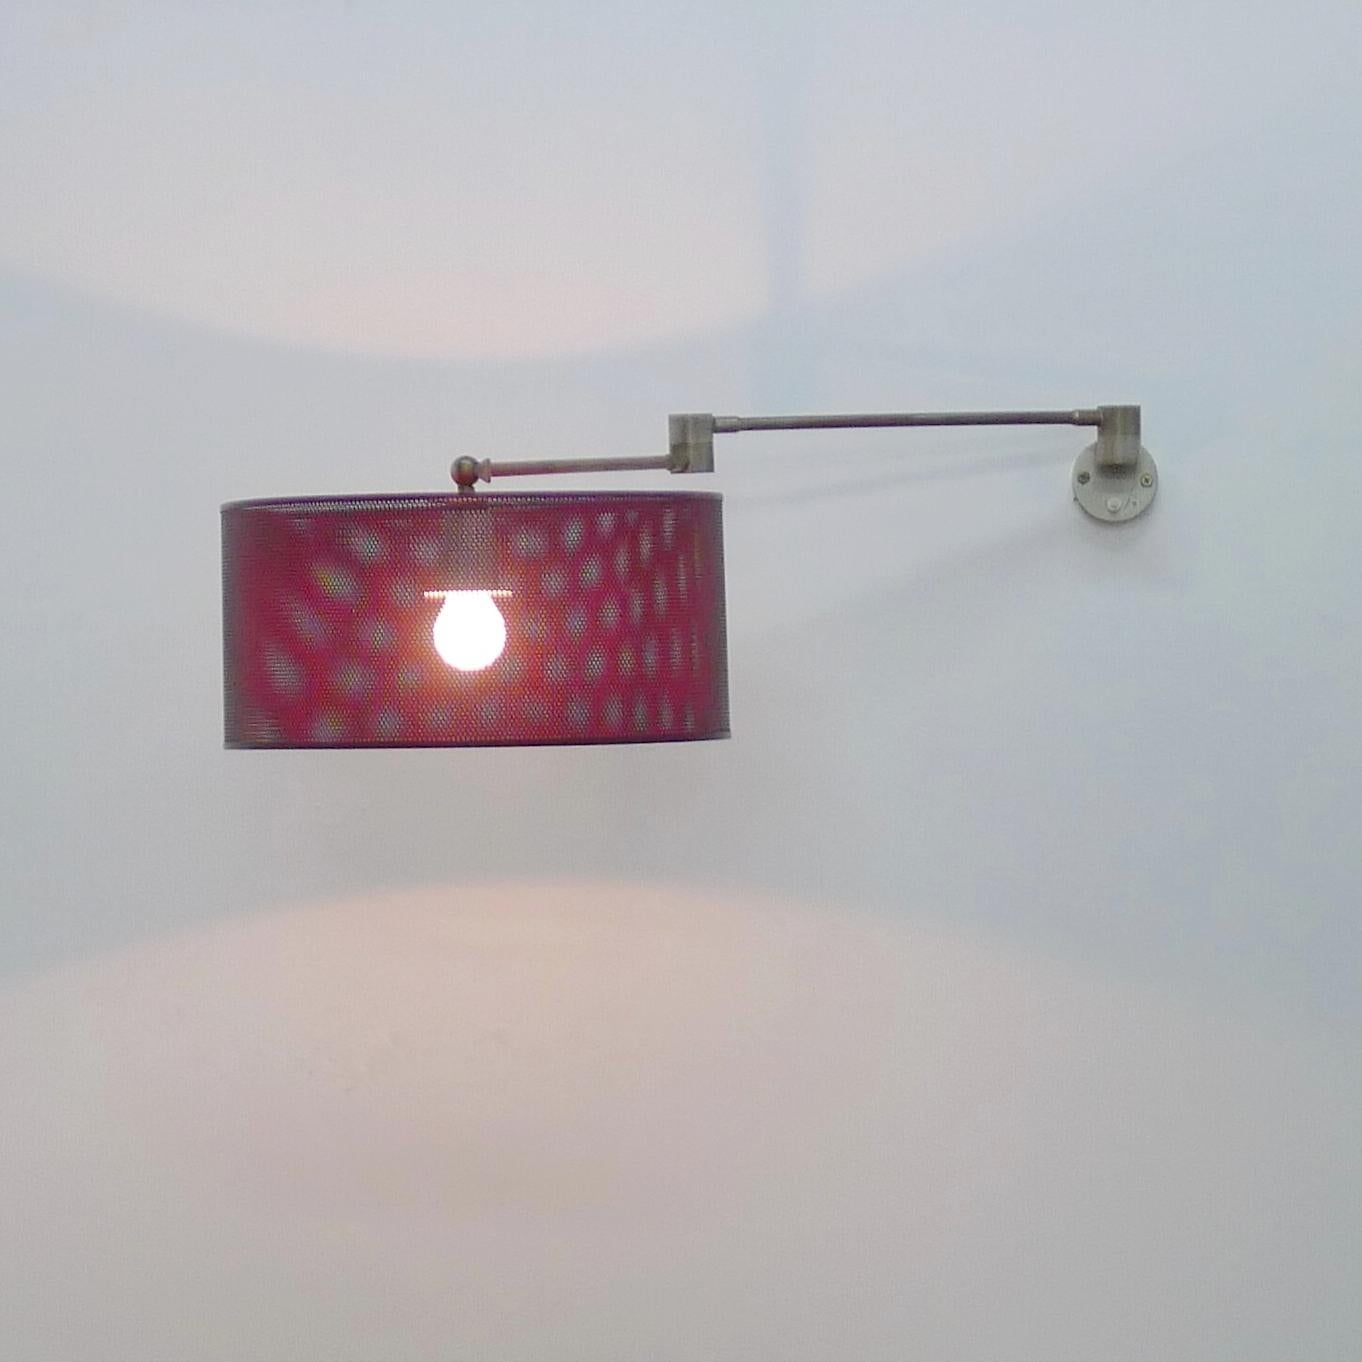 Angelo Lelii für Arredoluce, verstellbare Wandleuchte mit rot lackiertem Stahlgeflechtschirm auf einem voll beweglichen Messingrohrträger mit zentralem Scharnier, das es ermöglicht, den Schirm in viele Richtungen zu bewegen, um das Licht dort